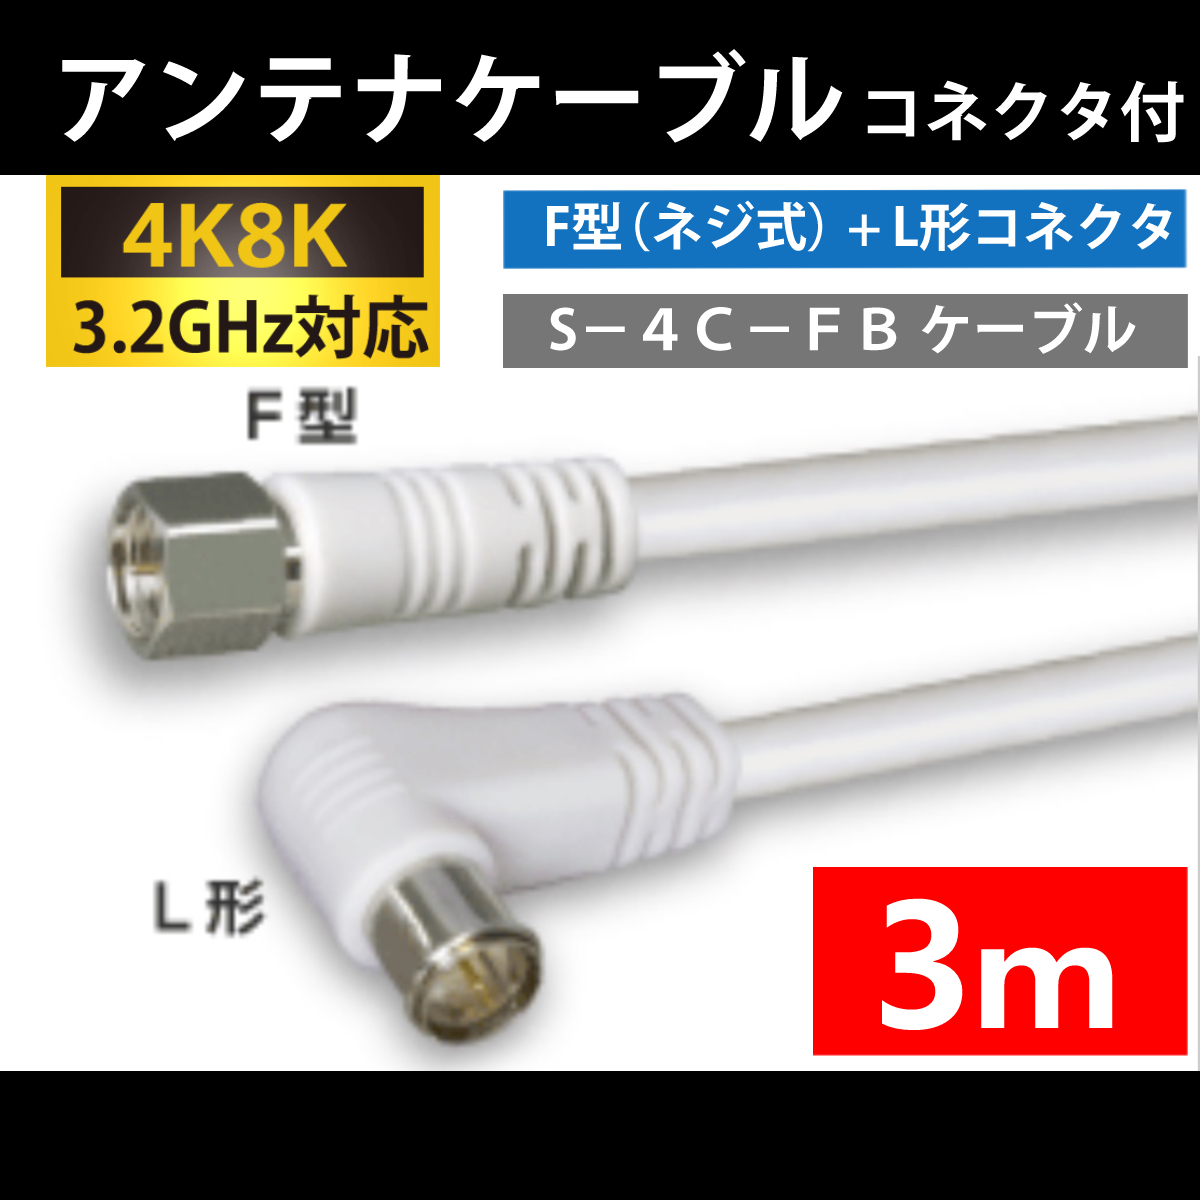 【送料無料】 4K8K対応 / アンテナケーブル 3m / F型 + L型 プラグ / 4C同軸ケーブル_画像1